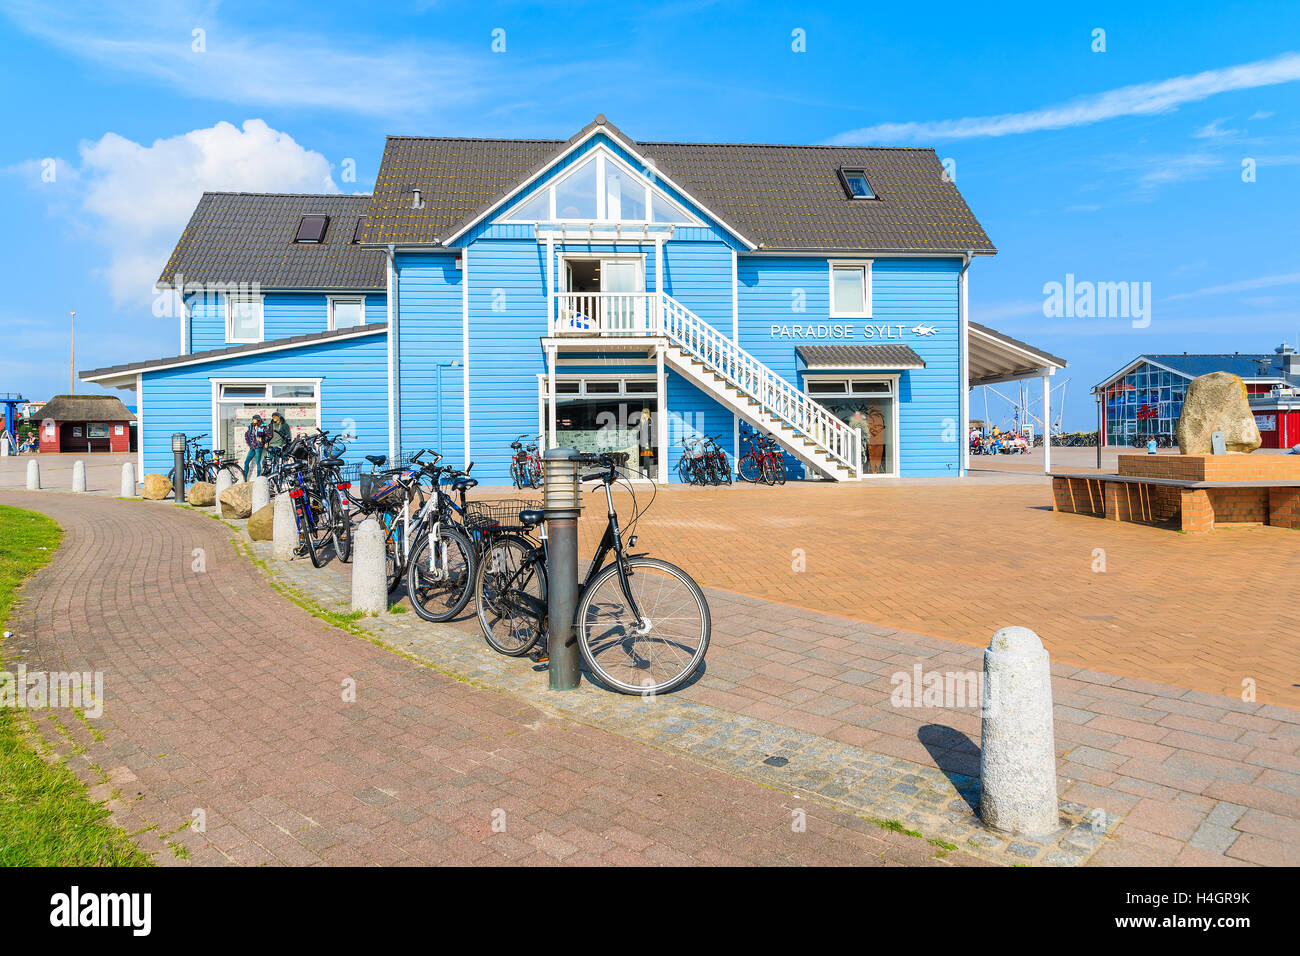 Isola di Sylt, Germania - Settembre 6, 2016: tipico edificio blu con negozi all'interno dell'elenco porta sulla costa settentrionale dell'isola di Sylt, Germa Foto Stock